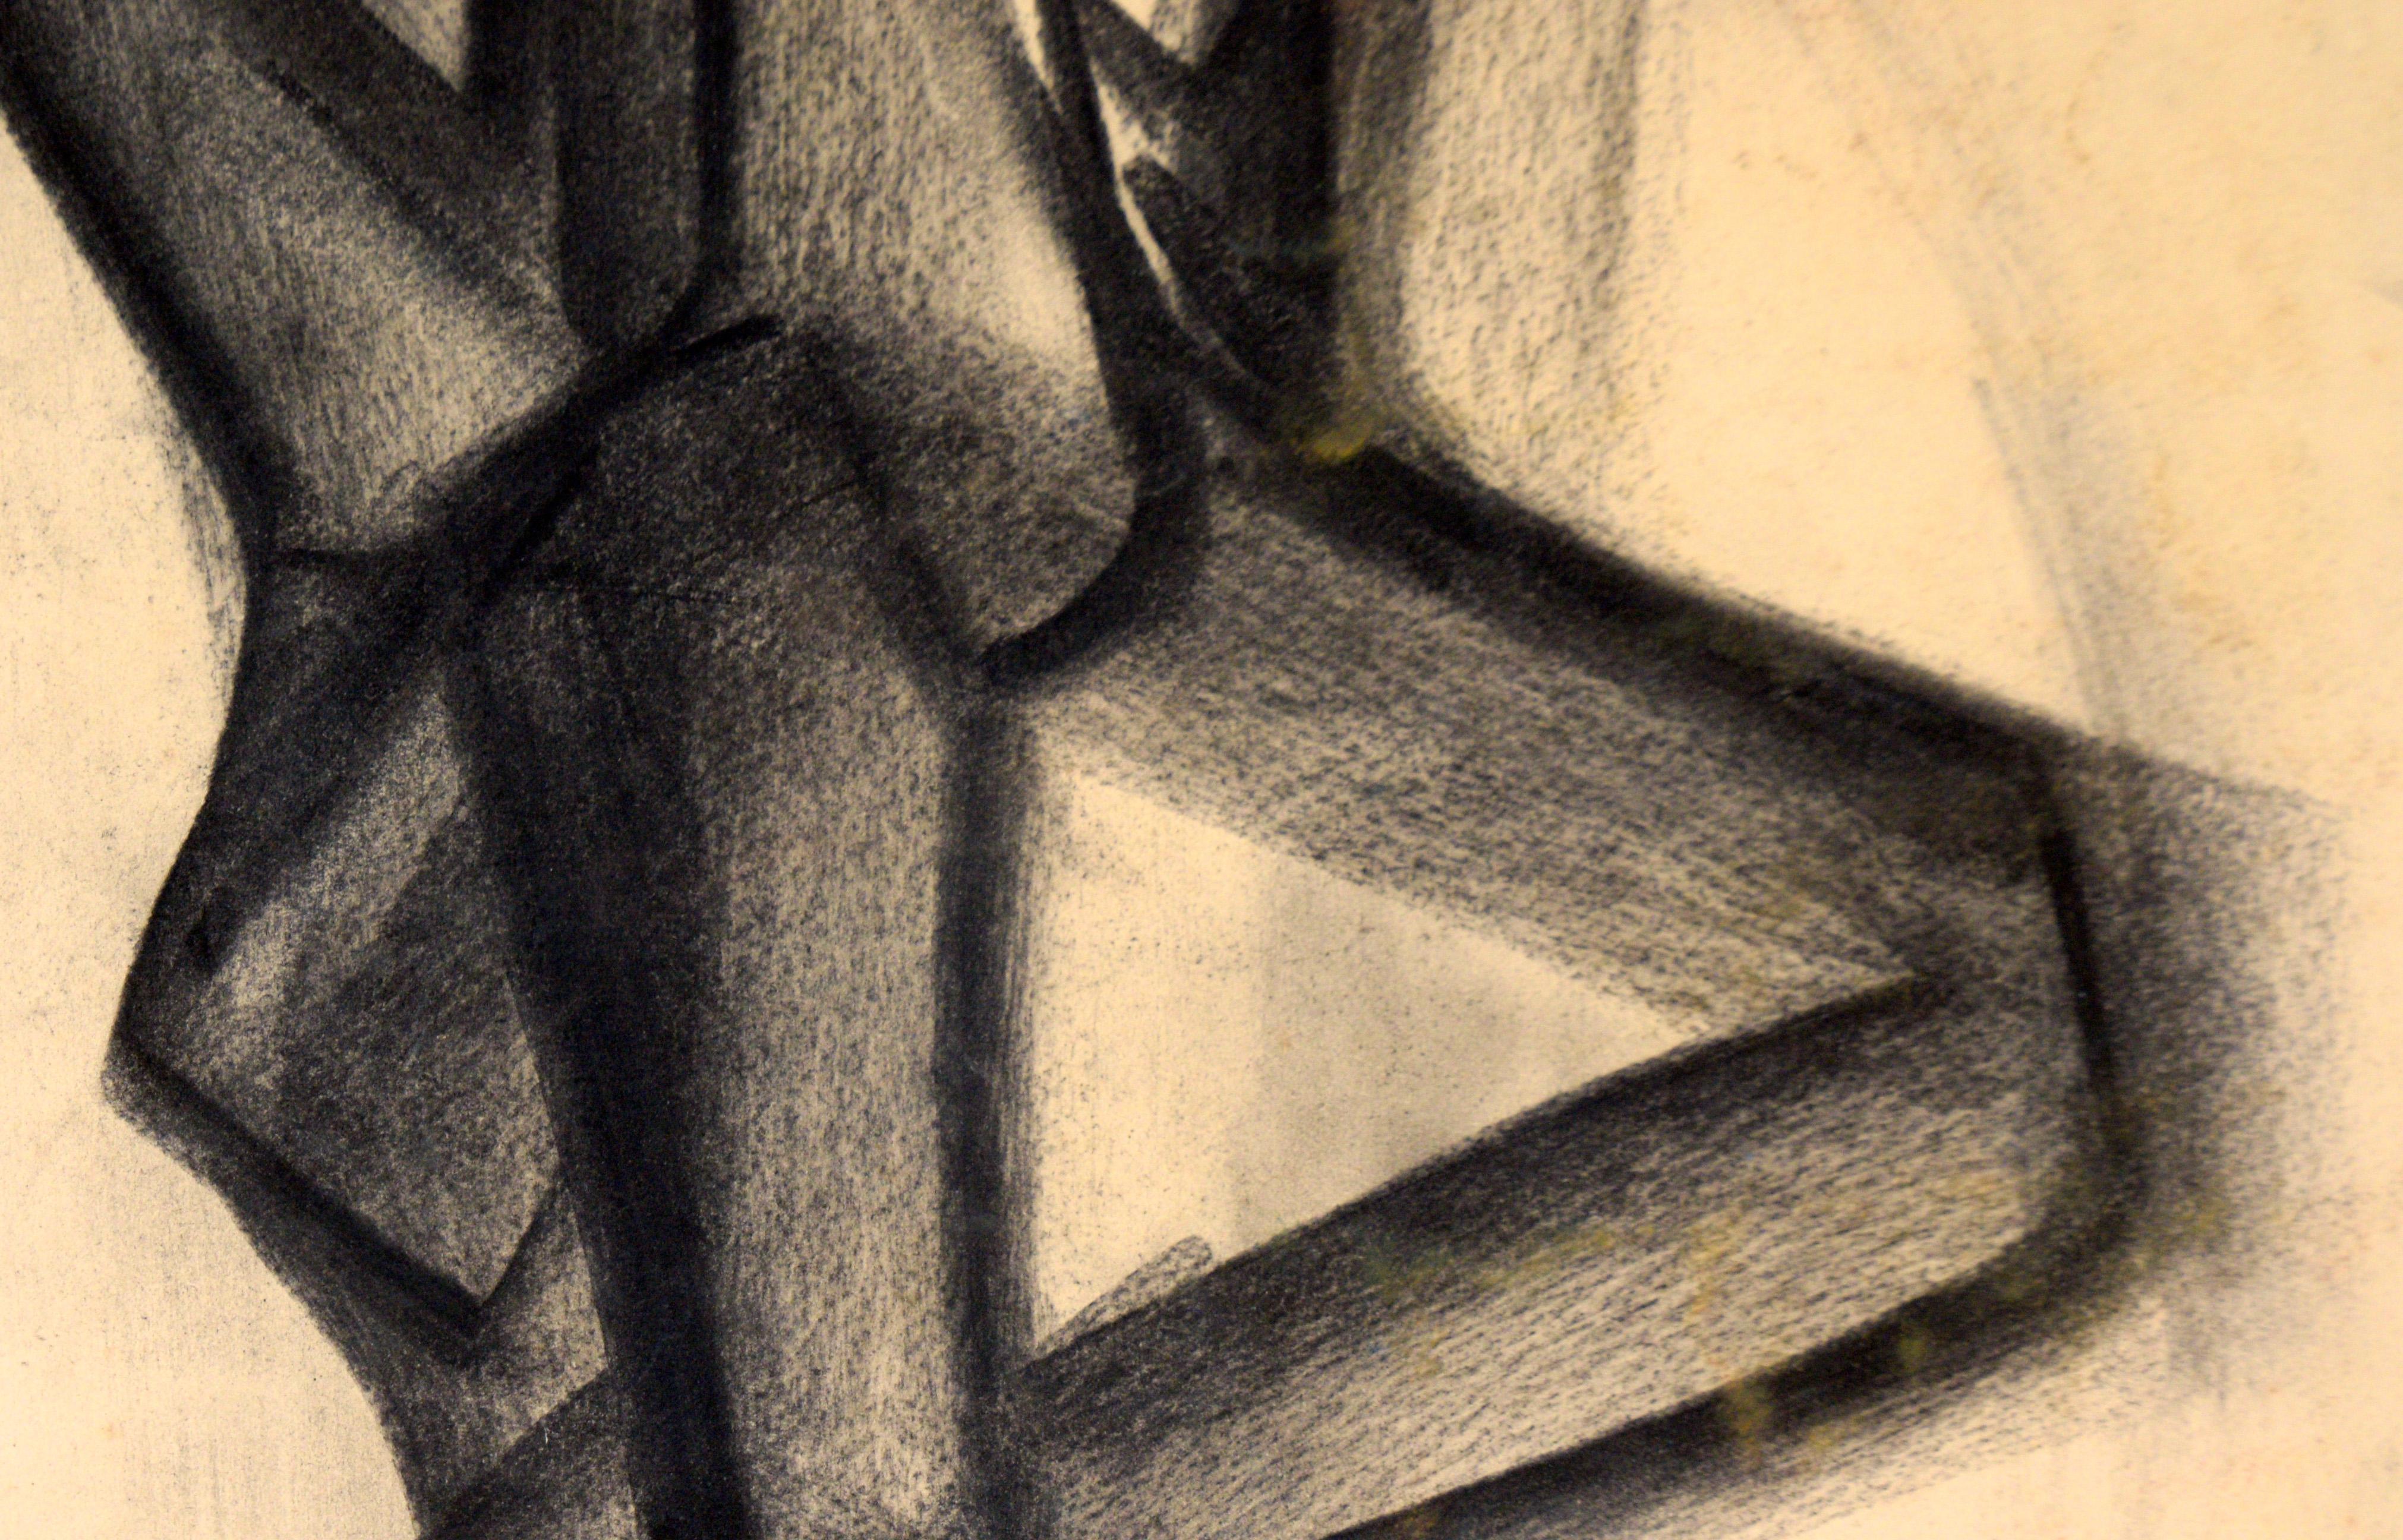 Kubistische Holzkohle-Figur-Zeichnung auf Papier

Reiche figurative Zeichnung mit wunderbarer Tiefe in der Komposition von unbekanntem Künstler. Der Künstler beherrscht das Medium Holzkohle sehr gut, mit breiten, sicheren Strichen in verschiedenen